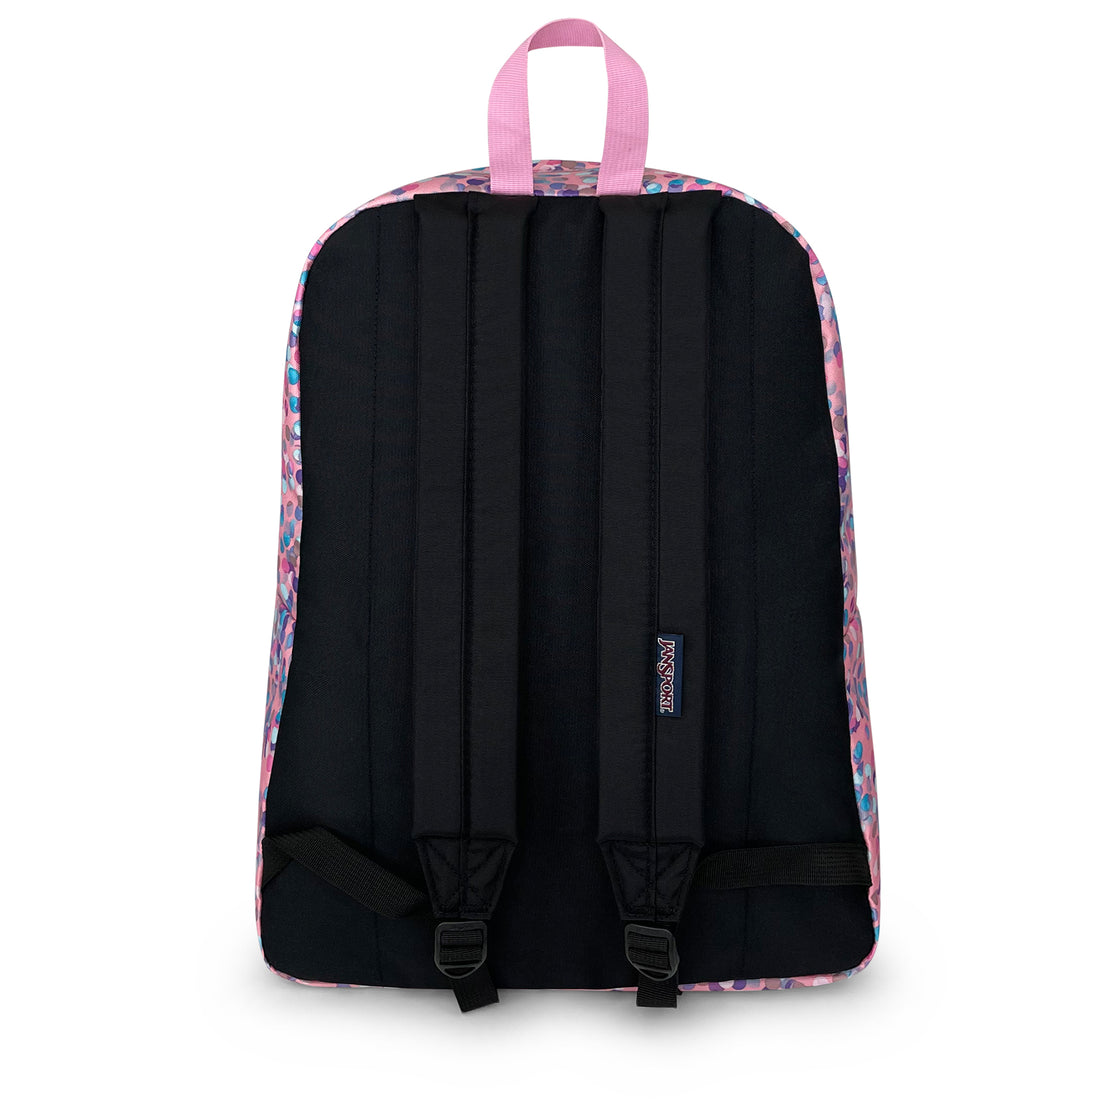 Superbreak Backpack 26L